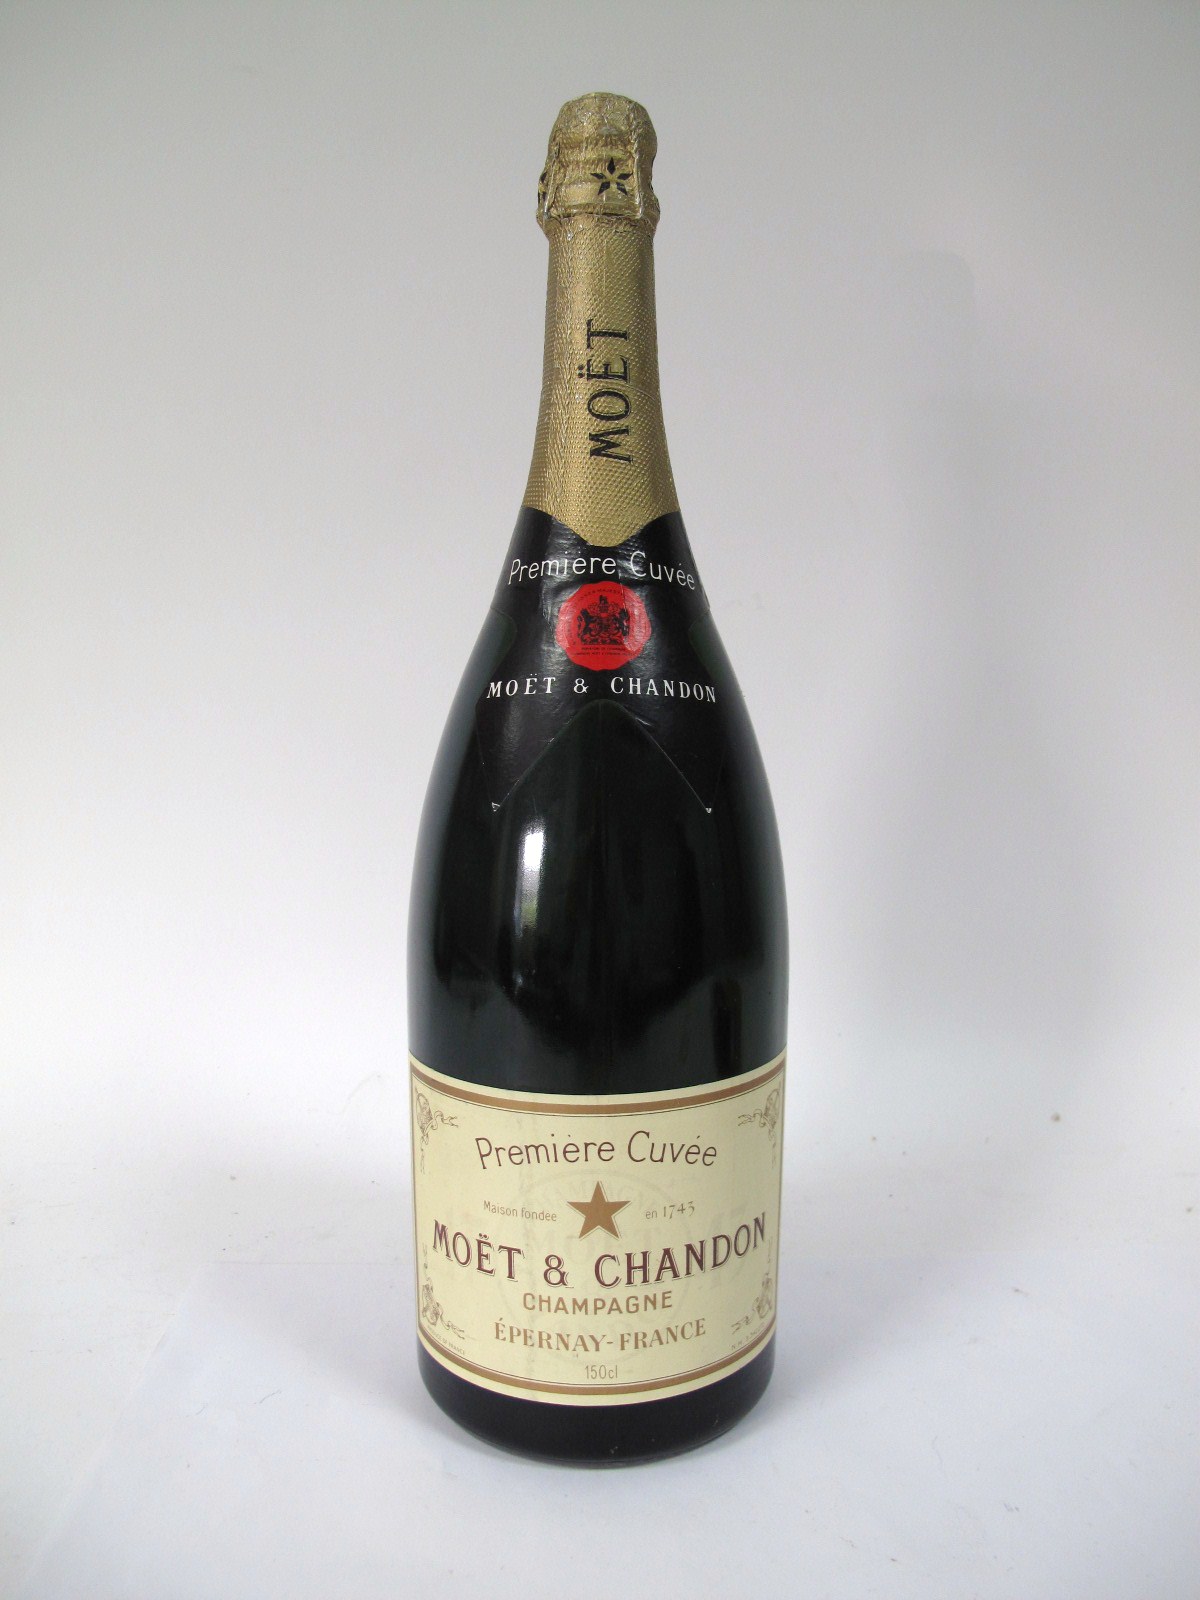 CHAMPAGNE - Moet & Chandon Champagne Epernay France, Magnum, 1.5ltr.